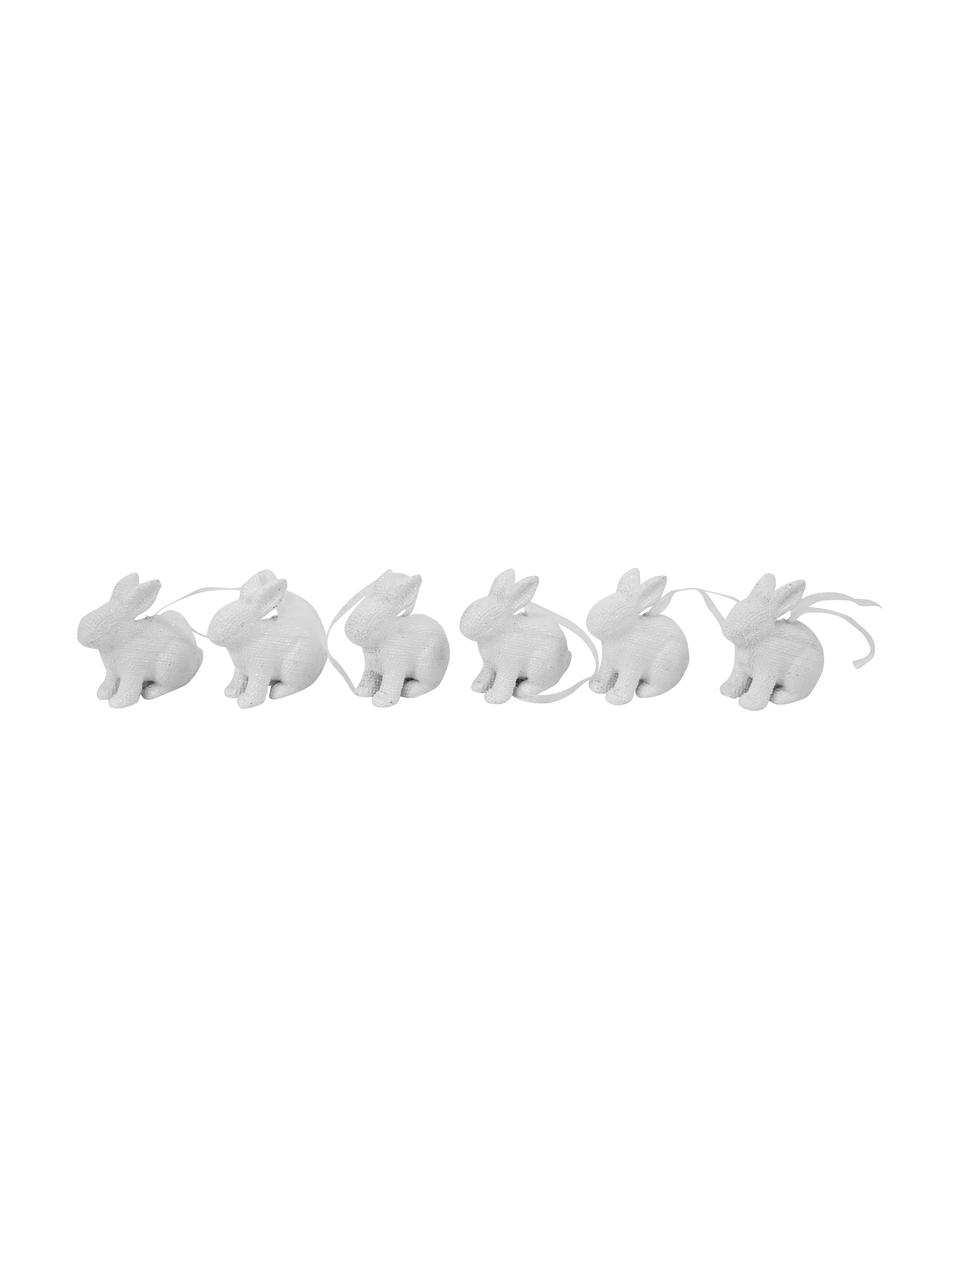 Mini lapins de Pâques Pailletti, 6 pièces, Résine, Blanc, larg. 5 x haut. 6 cm